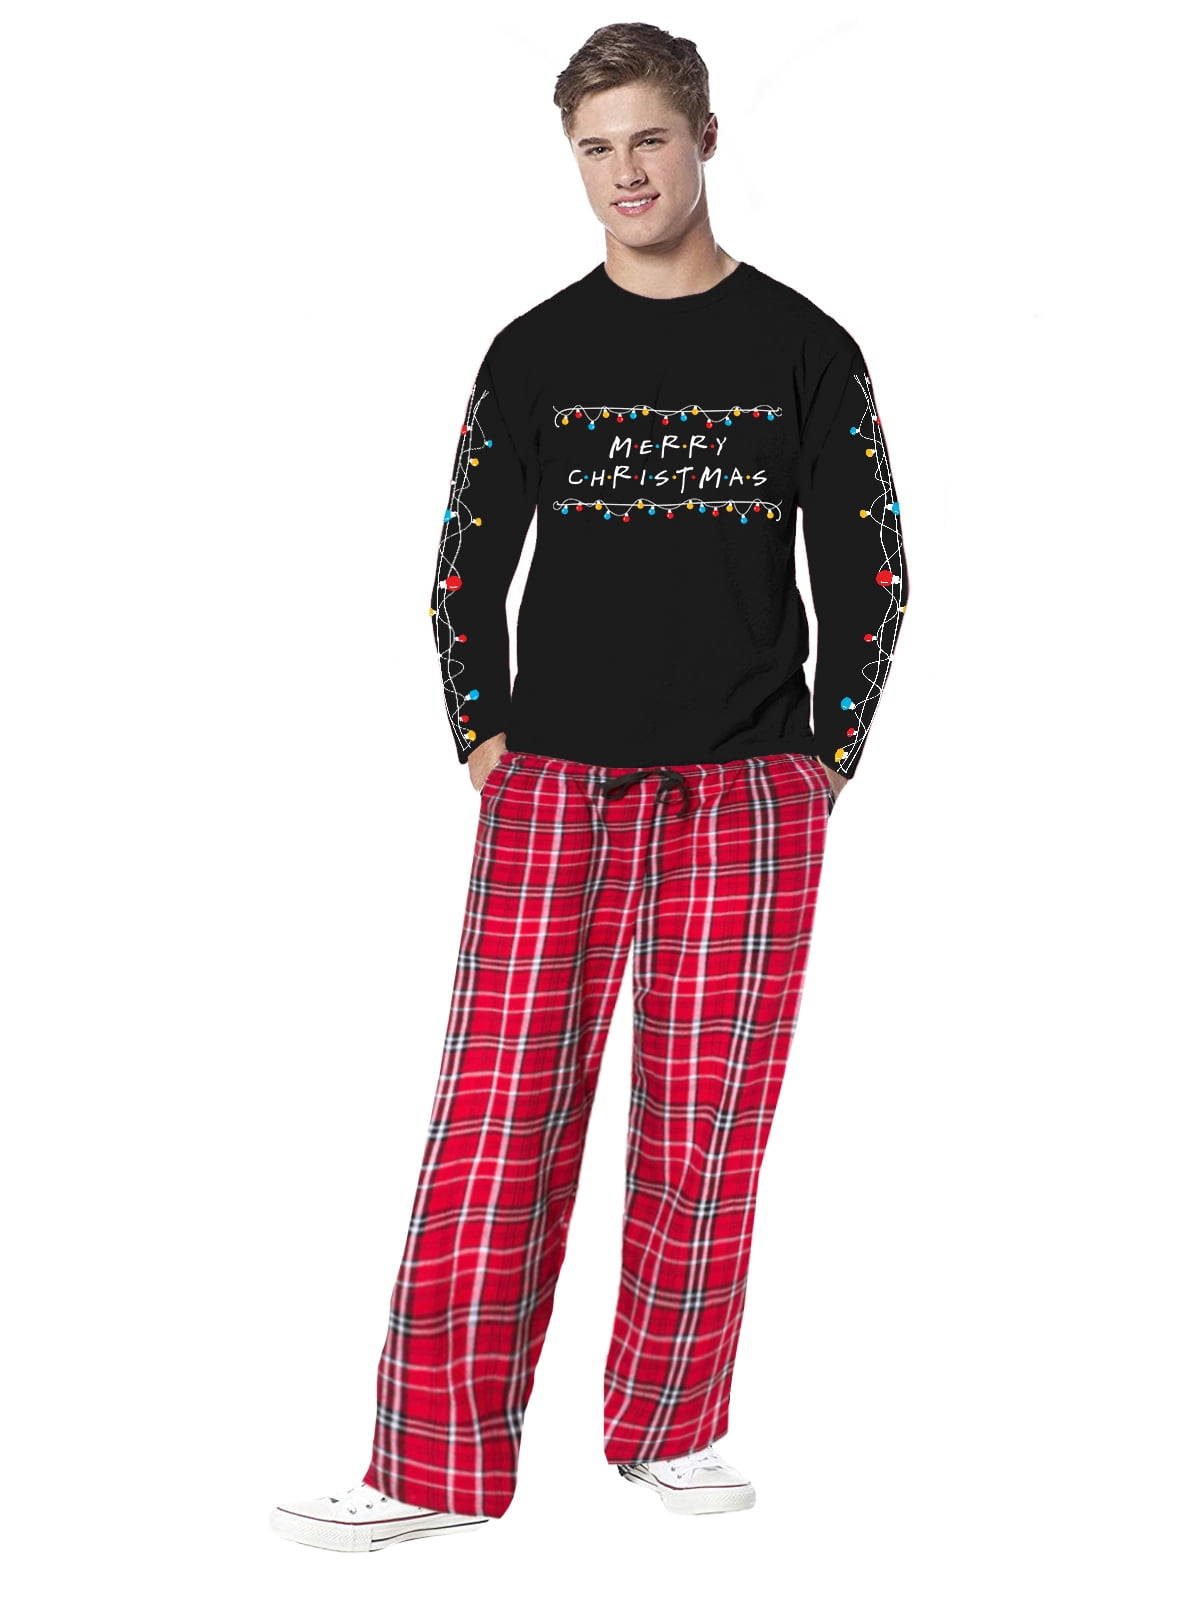 Boys Pyjama Sets Winter Autumn Christmas Xmas Pajamas Black Red Pjs 